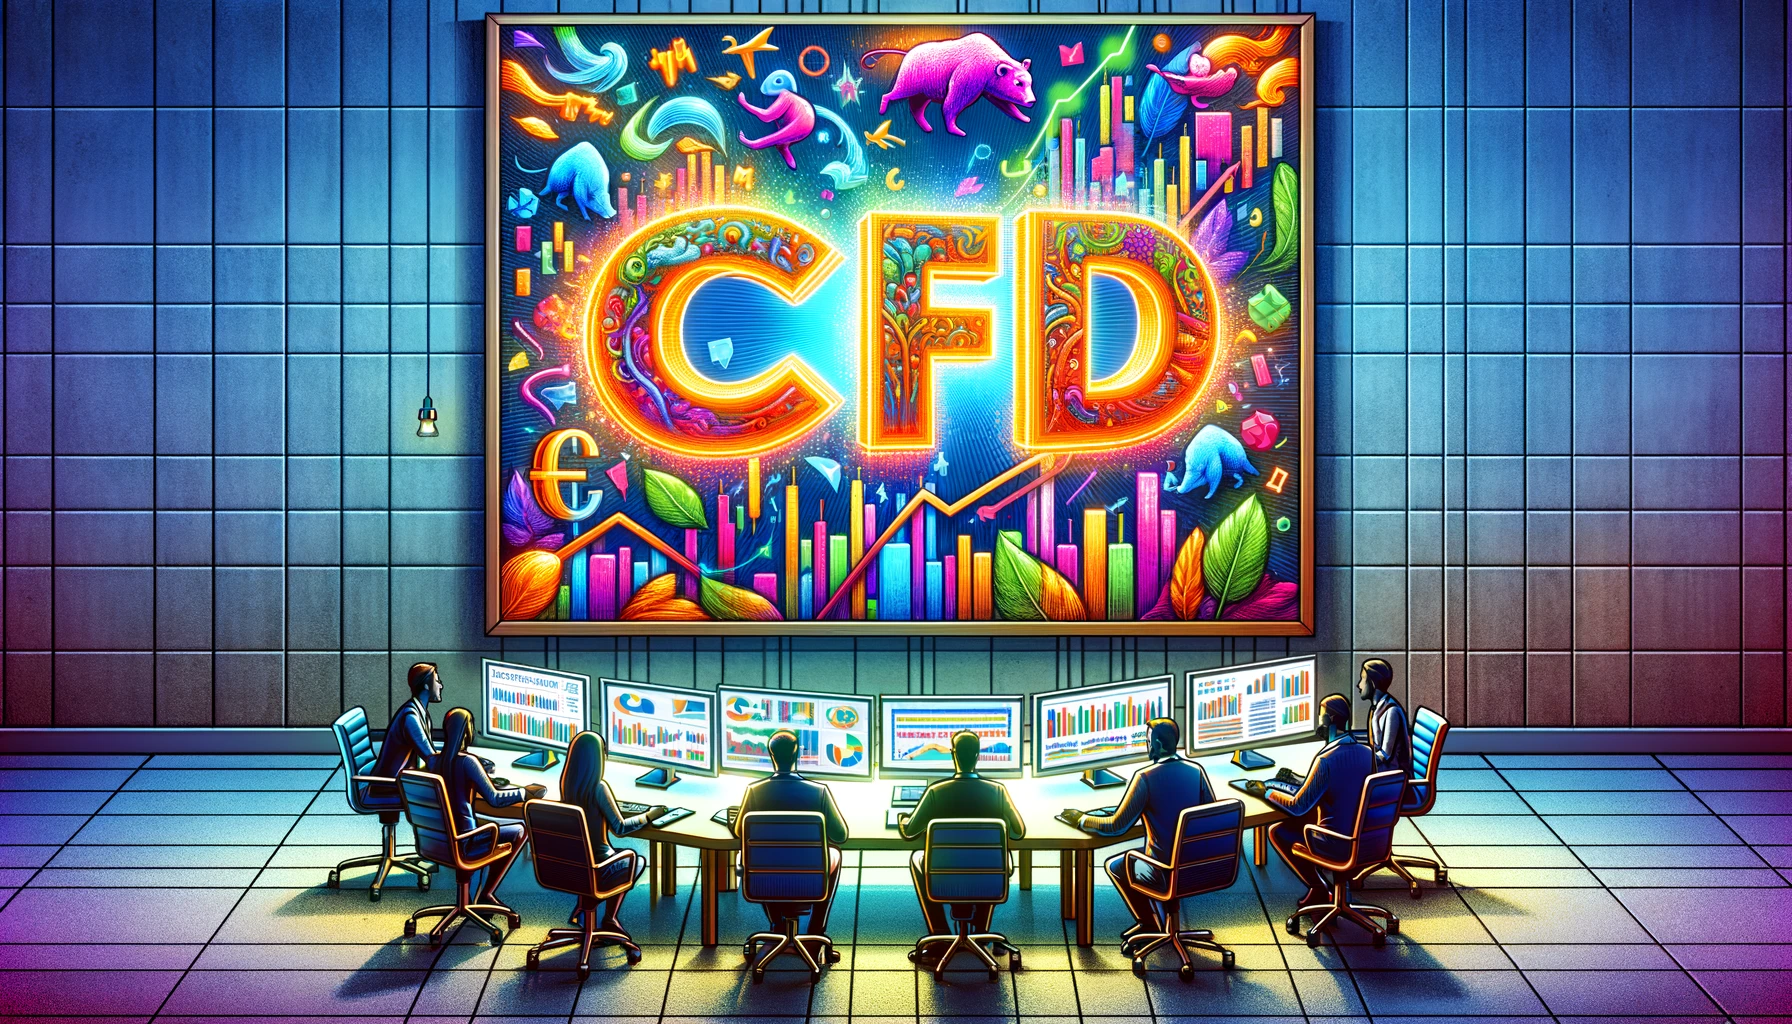 CFD-handel